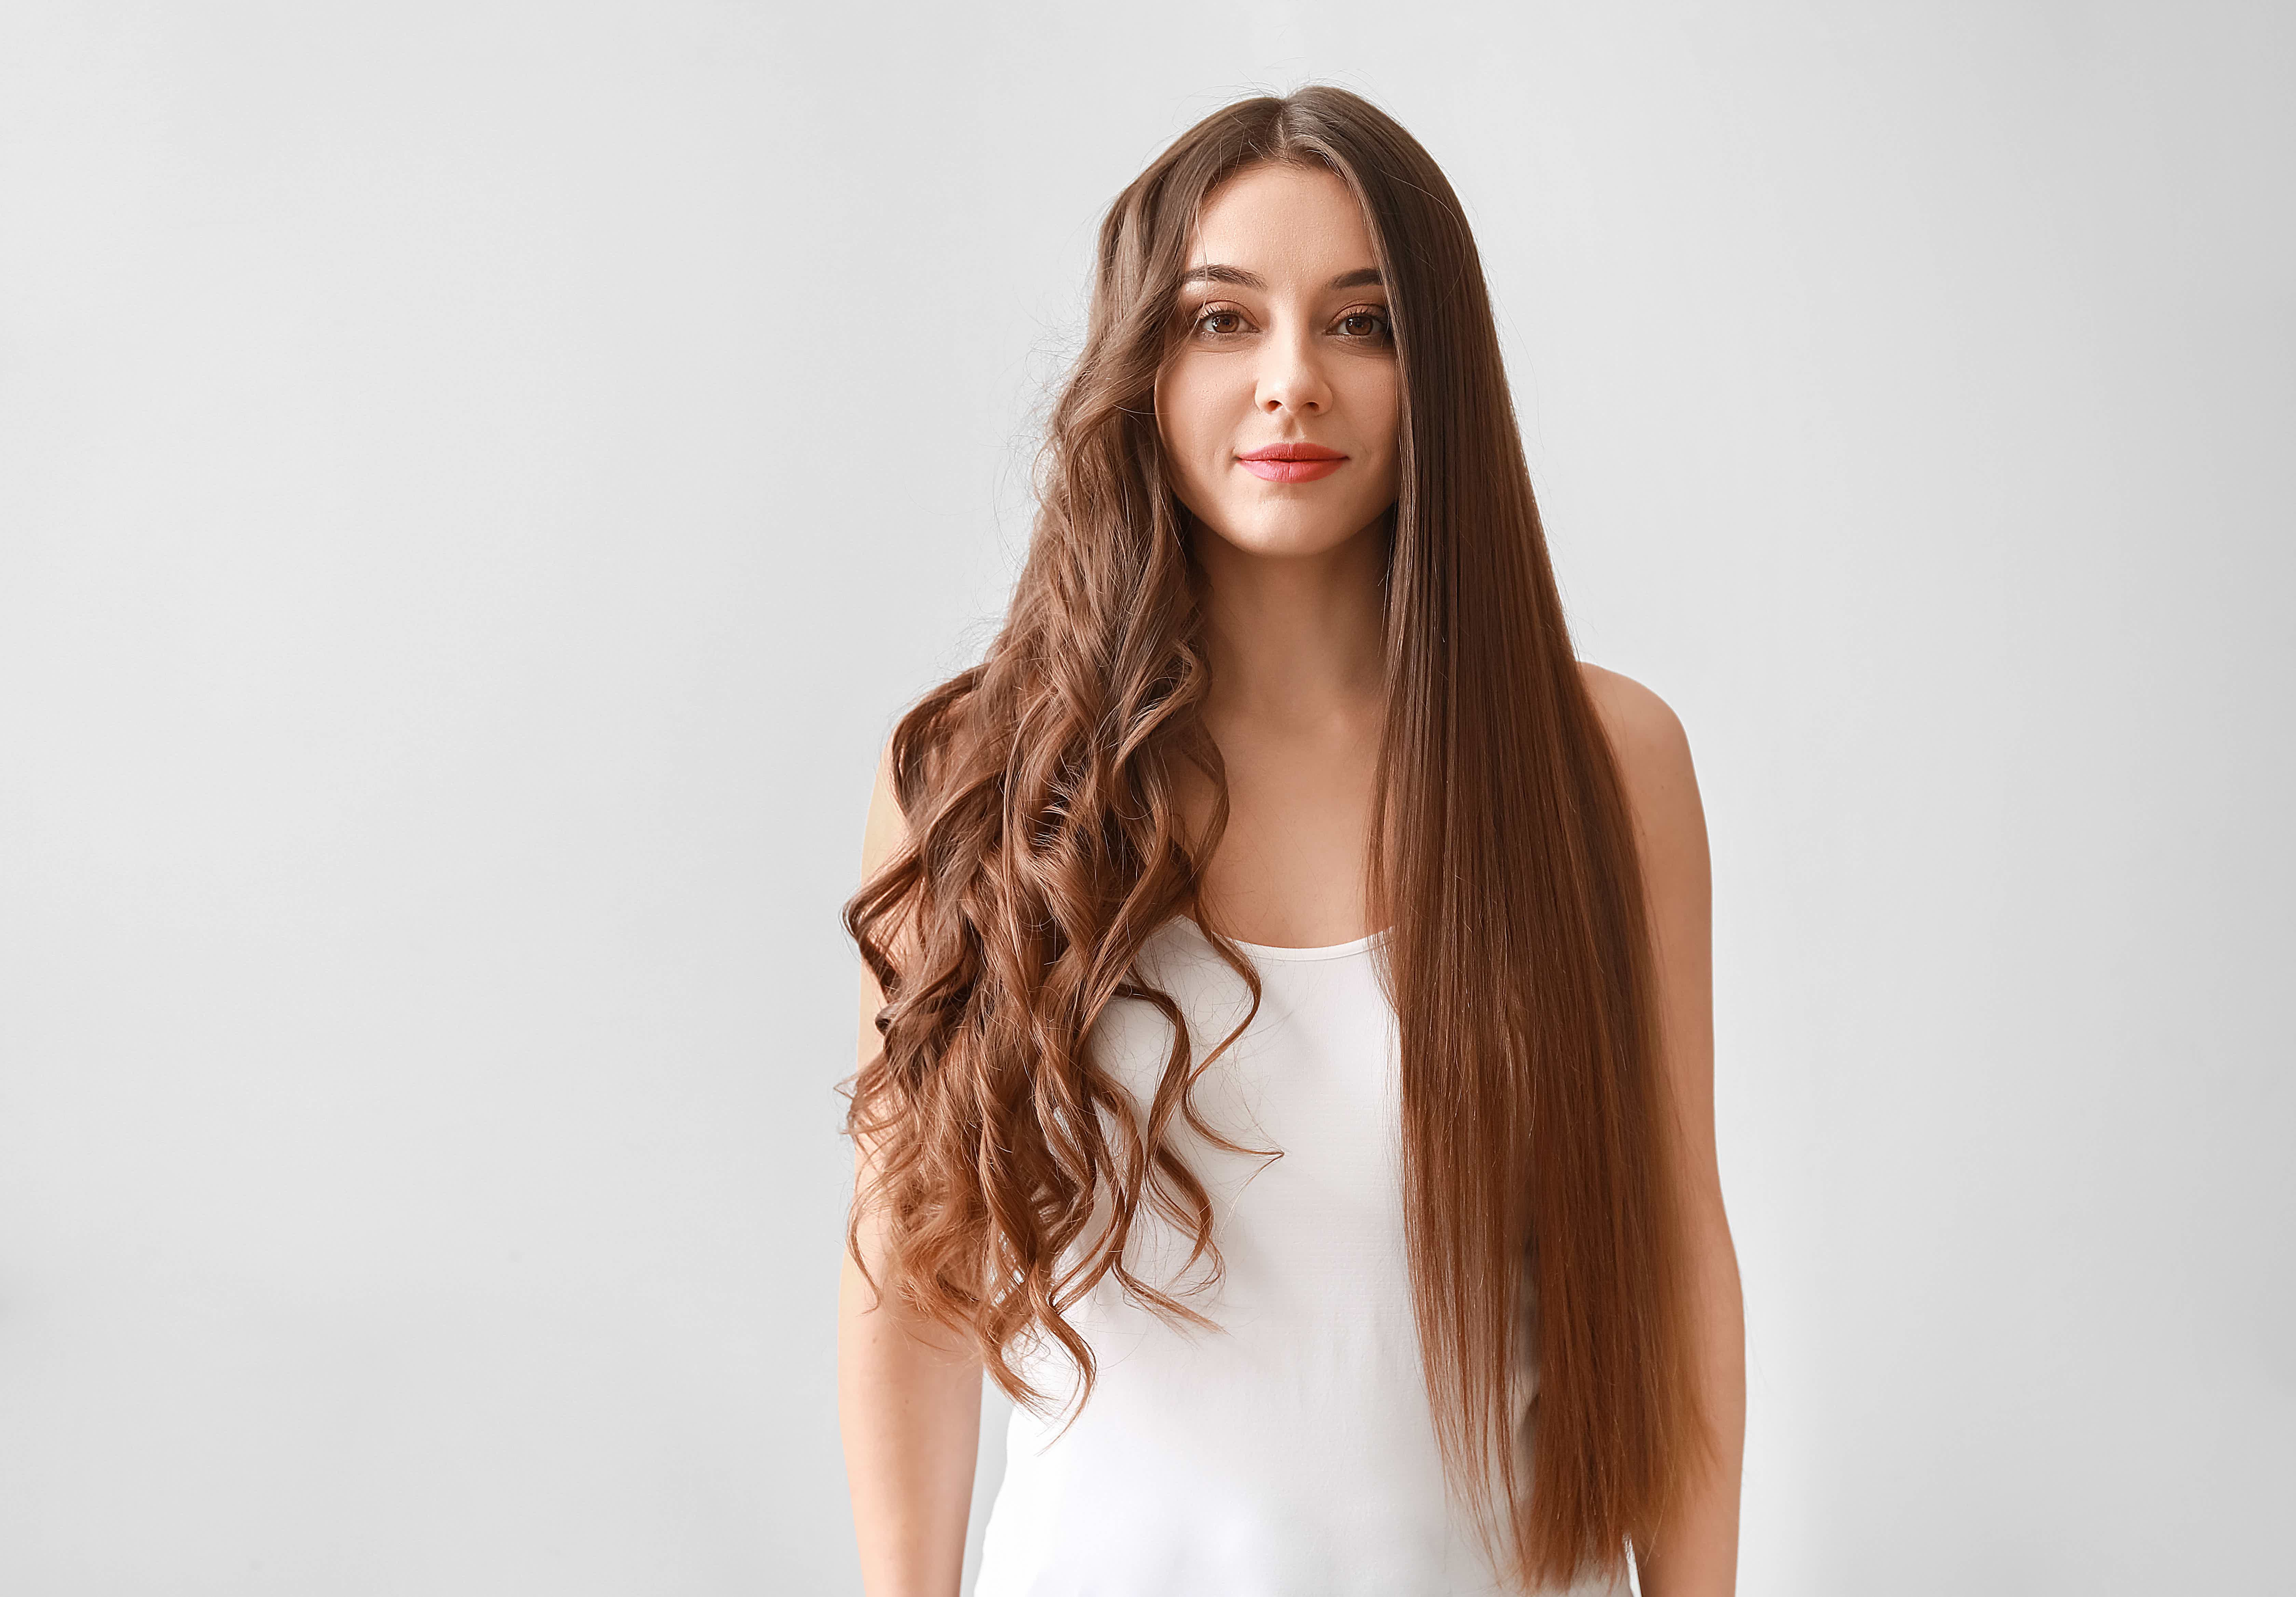 Confira algumas dicas para alisar o cabelo sem danificar. Fonte: AdobeStock.